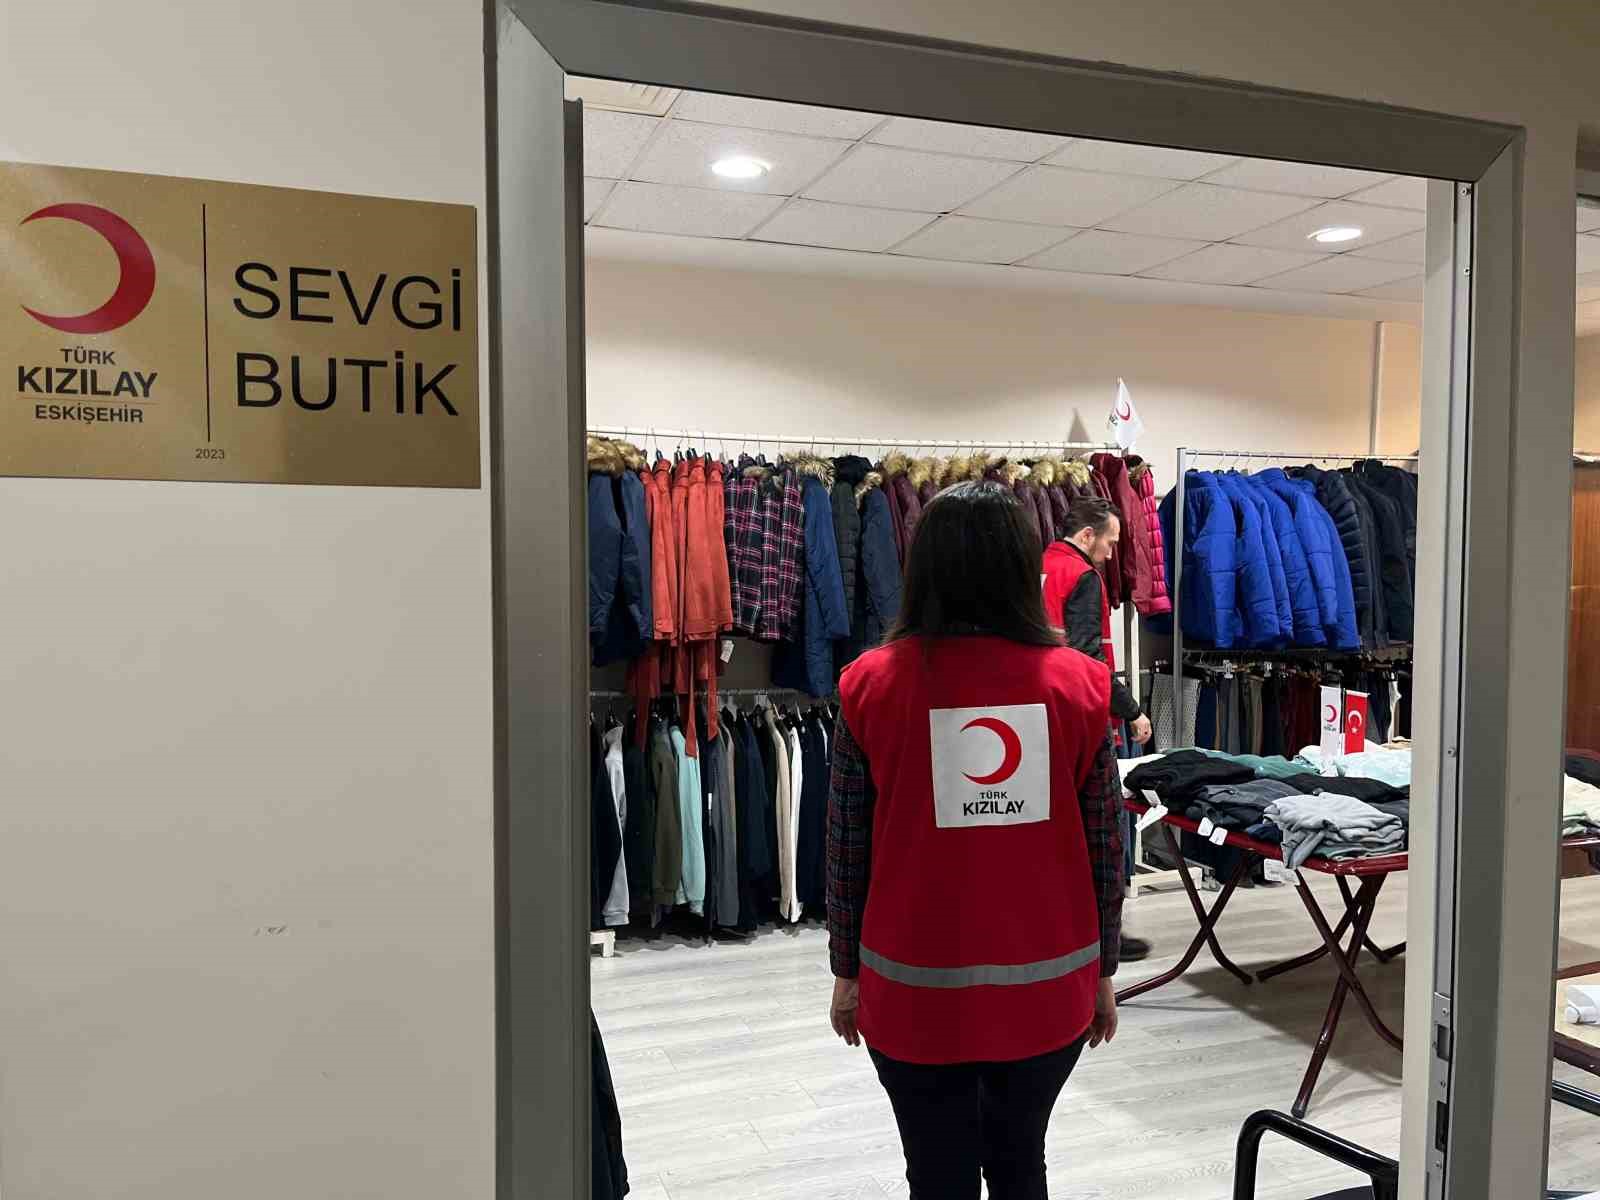 ESOGÜ ve Türk Kızılay'dan Öğrencilere Sevgi Butik